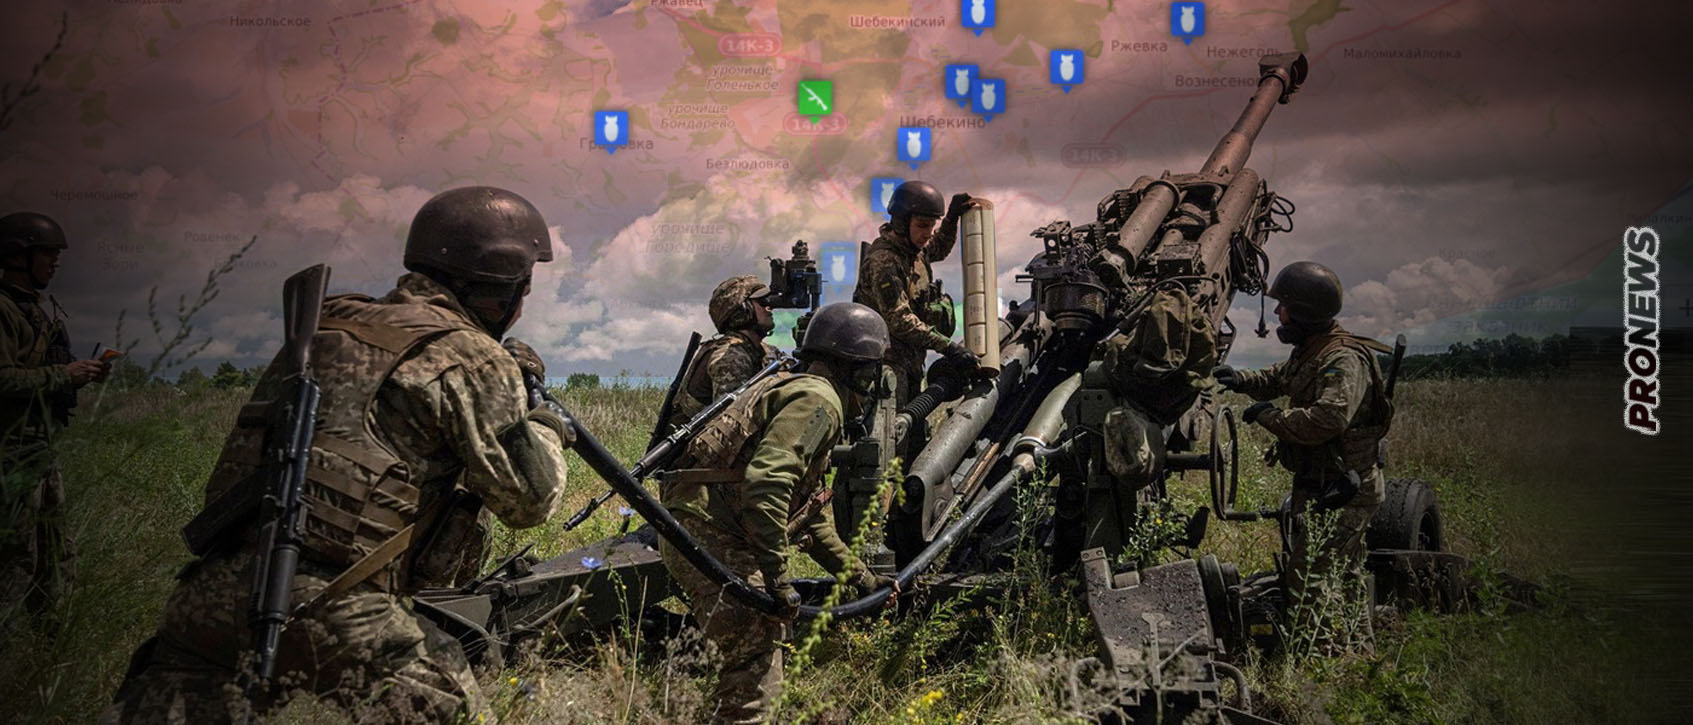 Μάχες εντός ρωσικού εδάφους με Ουκρανούς ενόπλους – Έχουν φτάσει σε βάθος 3 χλμ.!